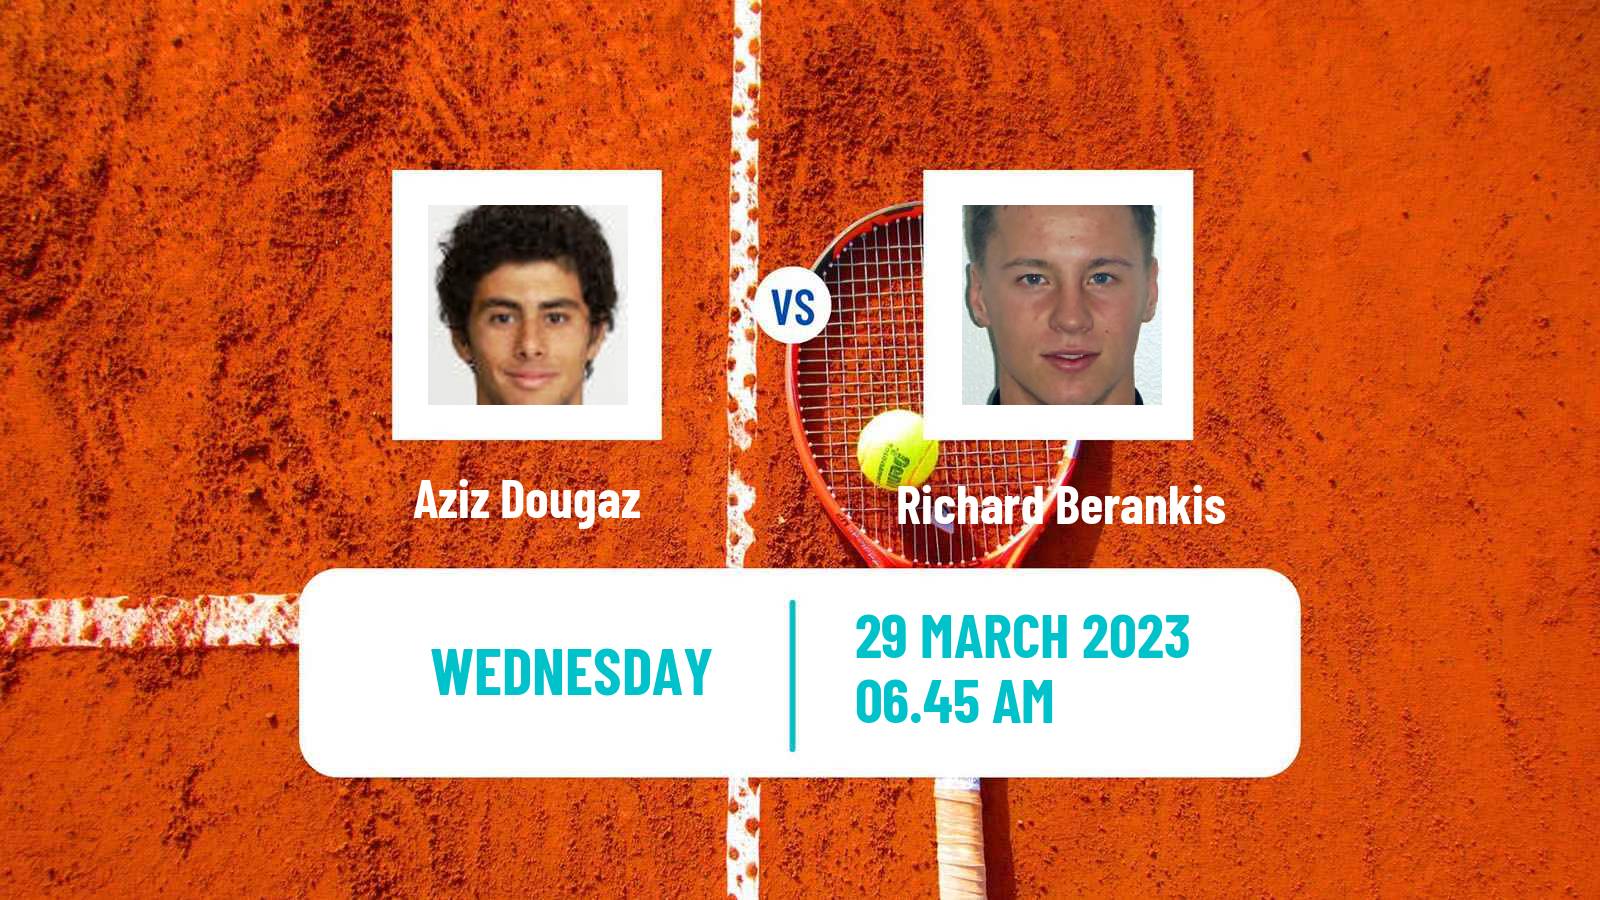 Tennis ATP Challenger Aziz Dougaz - Richard Berankis